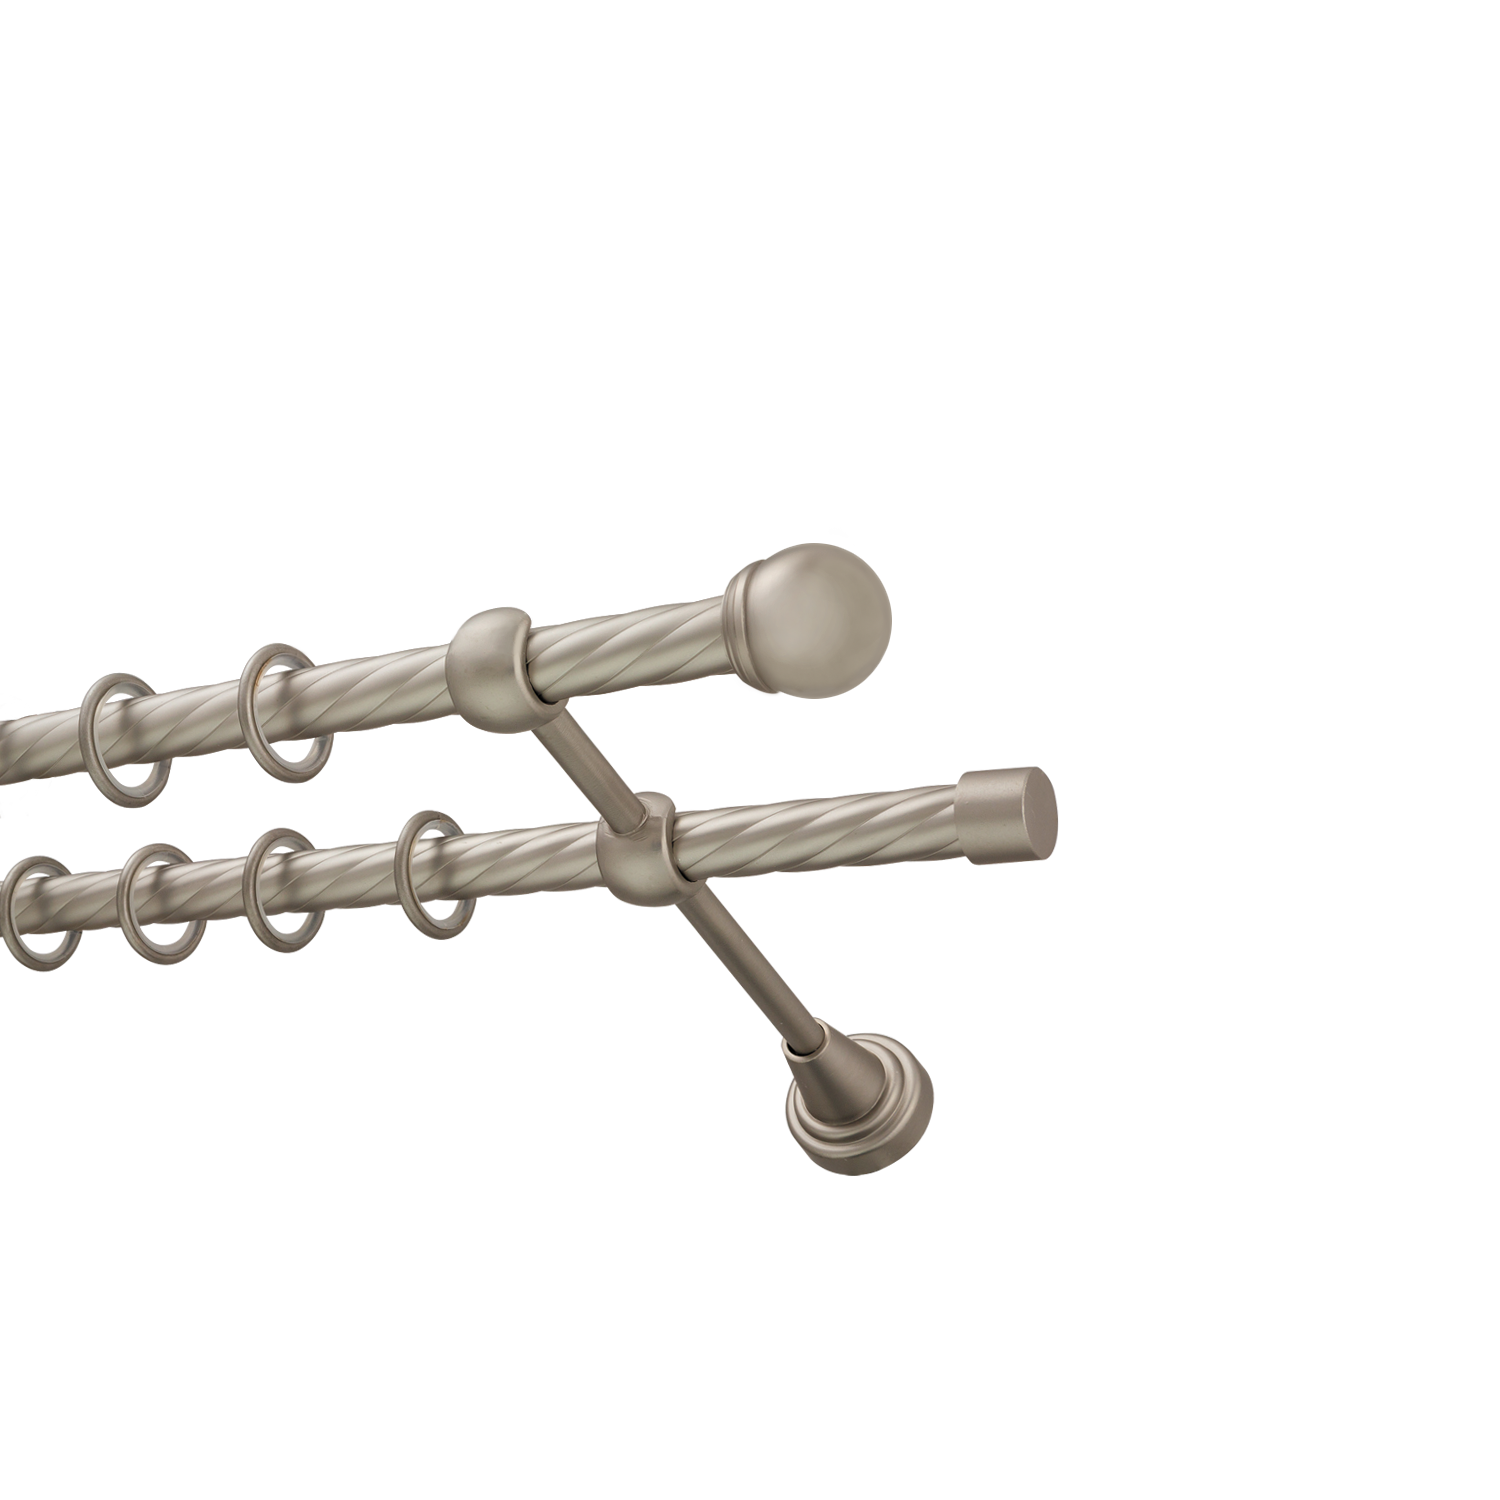 Металлический карниз для штор Вива, двухрядный 16/16 мм, сталь, витая штанга, длина 160 см - фото Wikidecor.ru